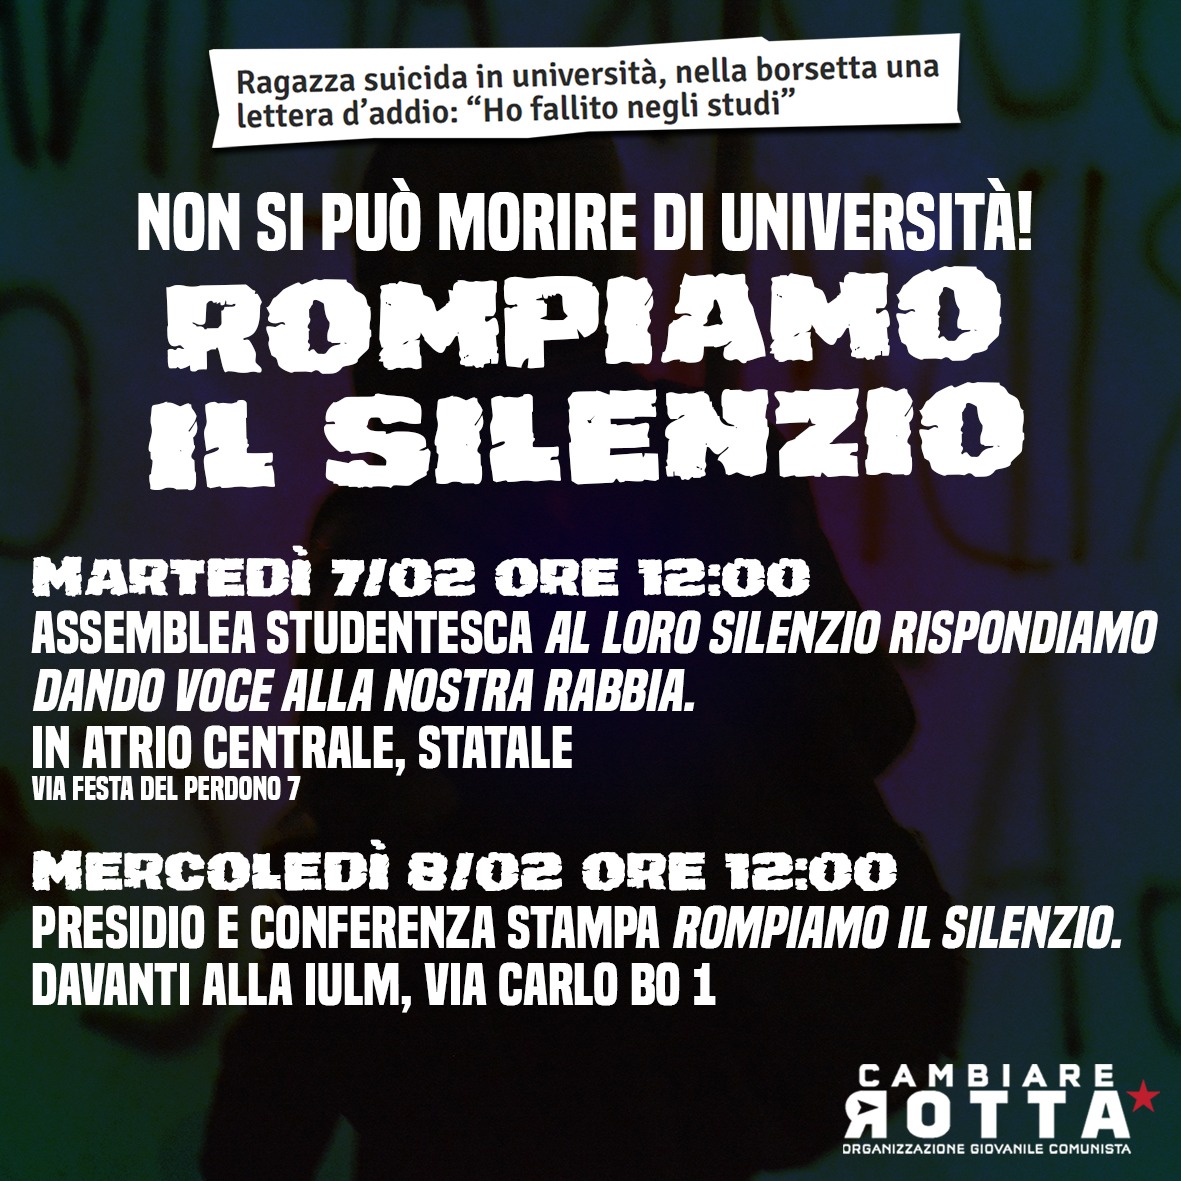 Milano. Suicidio in università: gli appuntamenti per “rompere il silenzio”